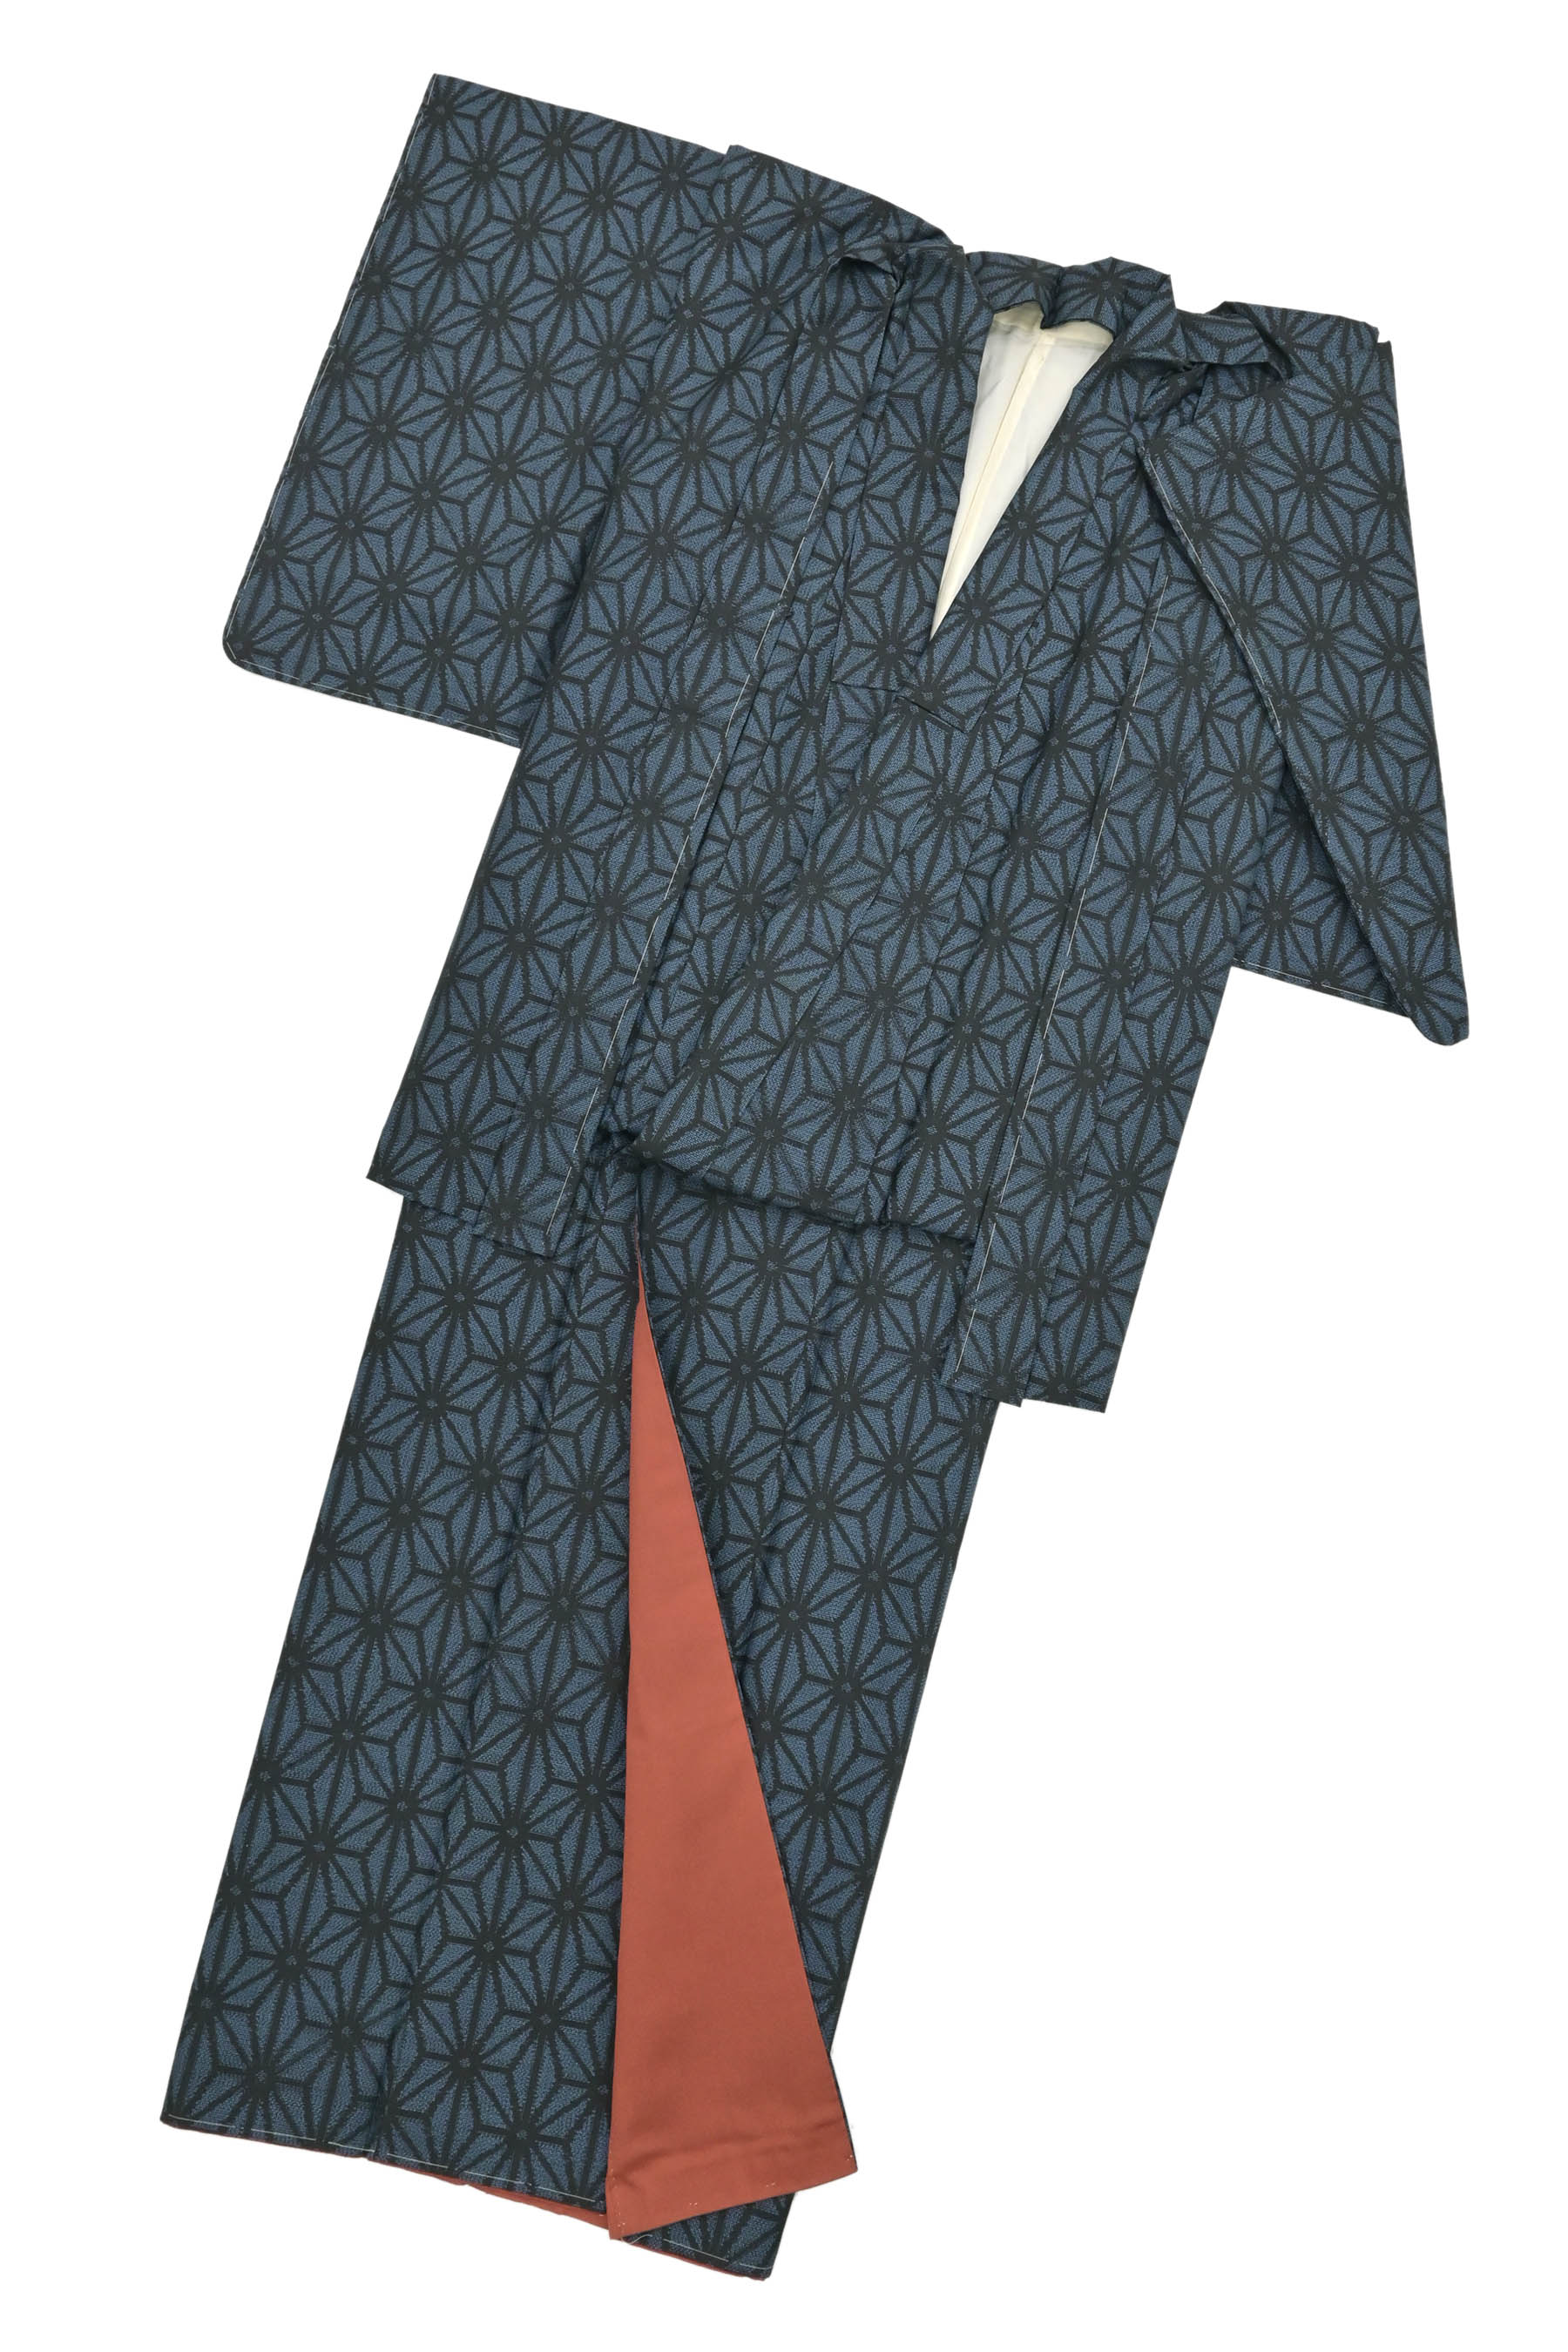 お値下げしました☆伝統工芸 村山大島紬の反物 m3803 - 着物・浴衣